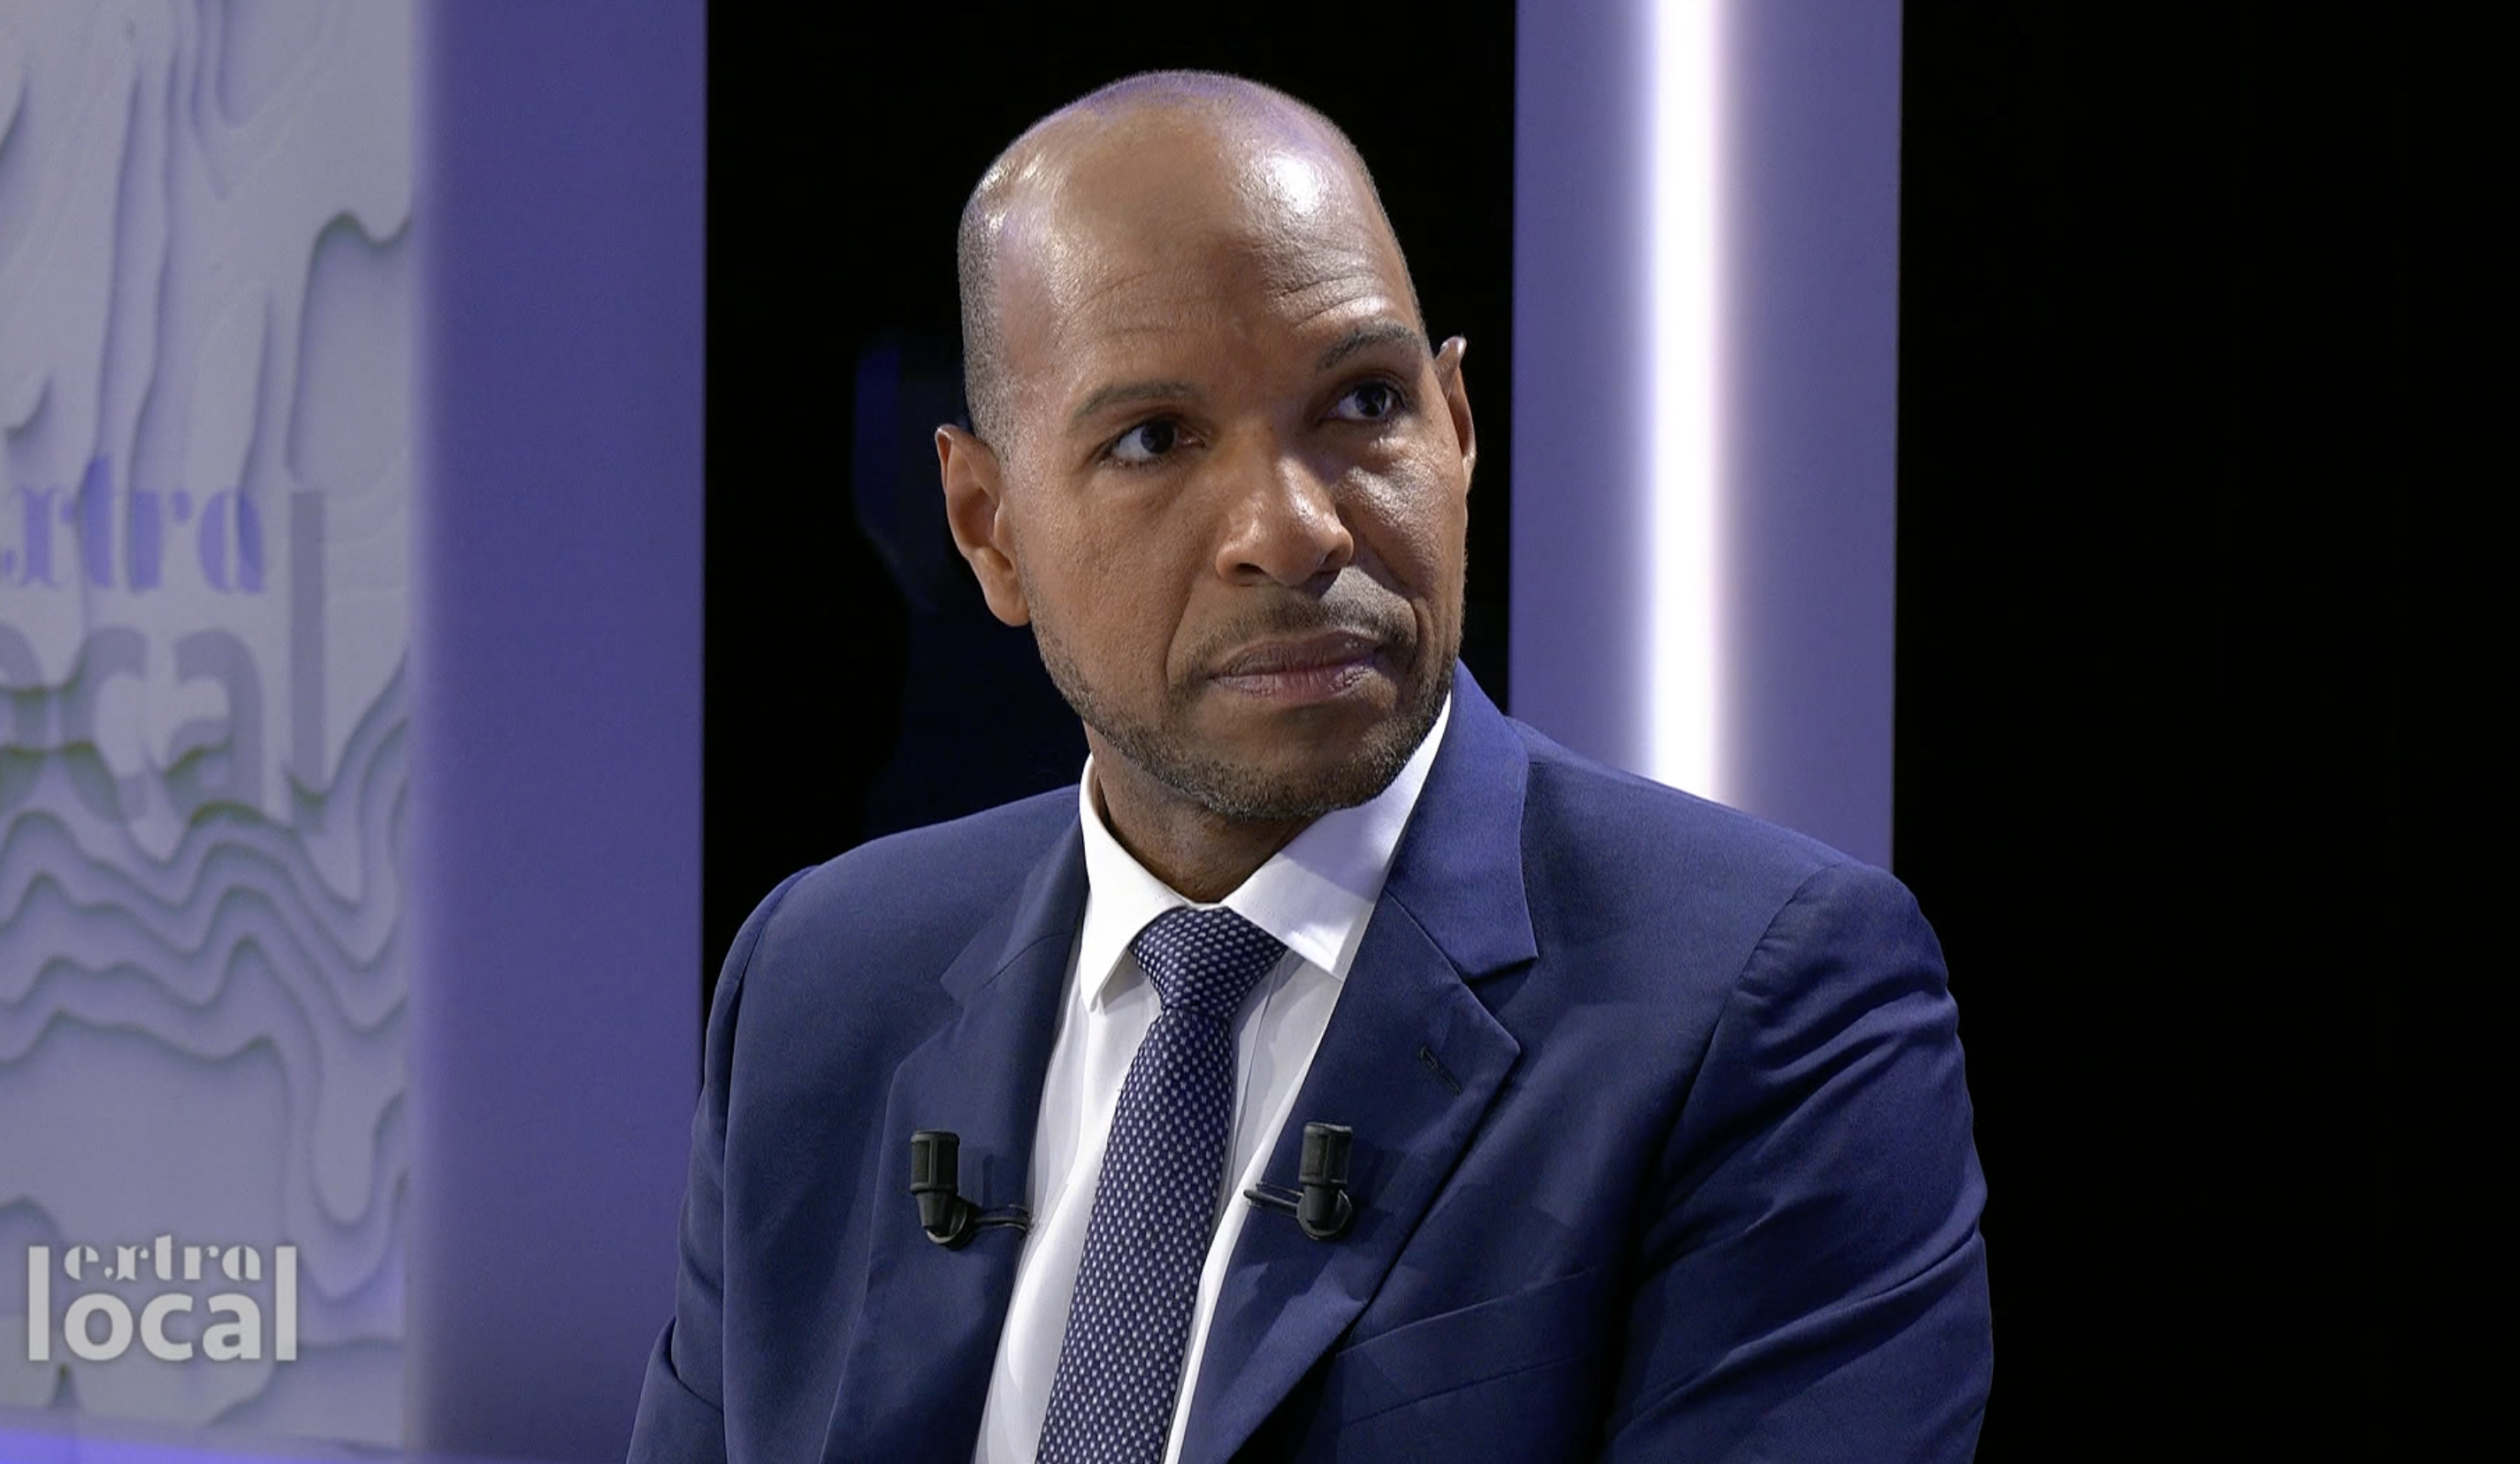     Le député guadeloupéen Olivier Serva, invité de l’émission « Extra Local » sur Public Sénat

